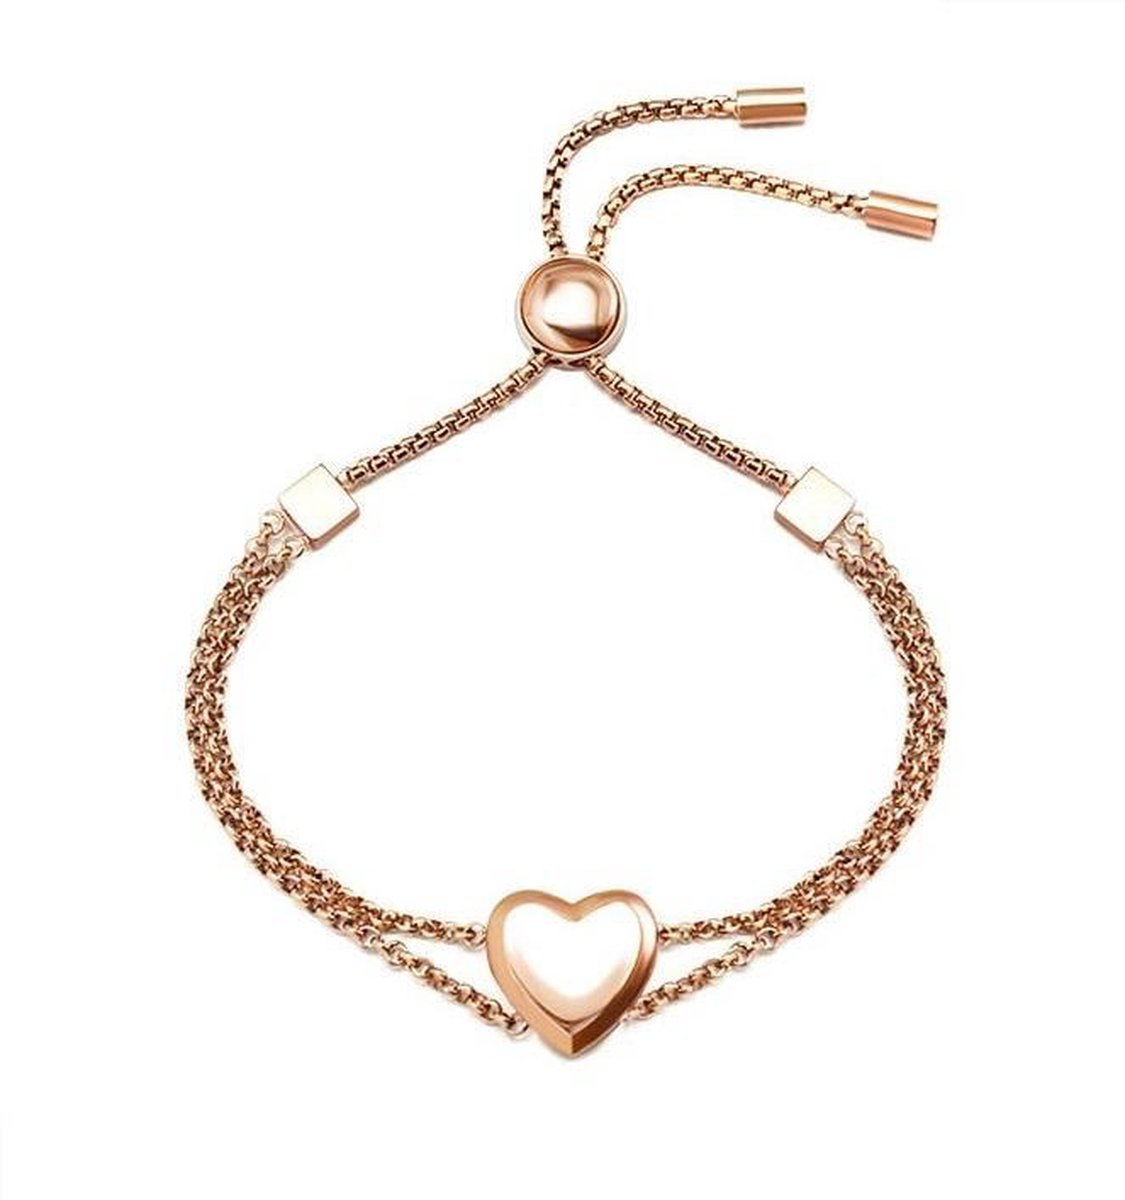 Shoplace Hart armband dames - 19cm - Rose goud - Valentijn cadeautje voor haar